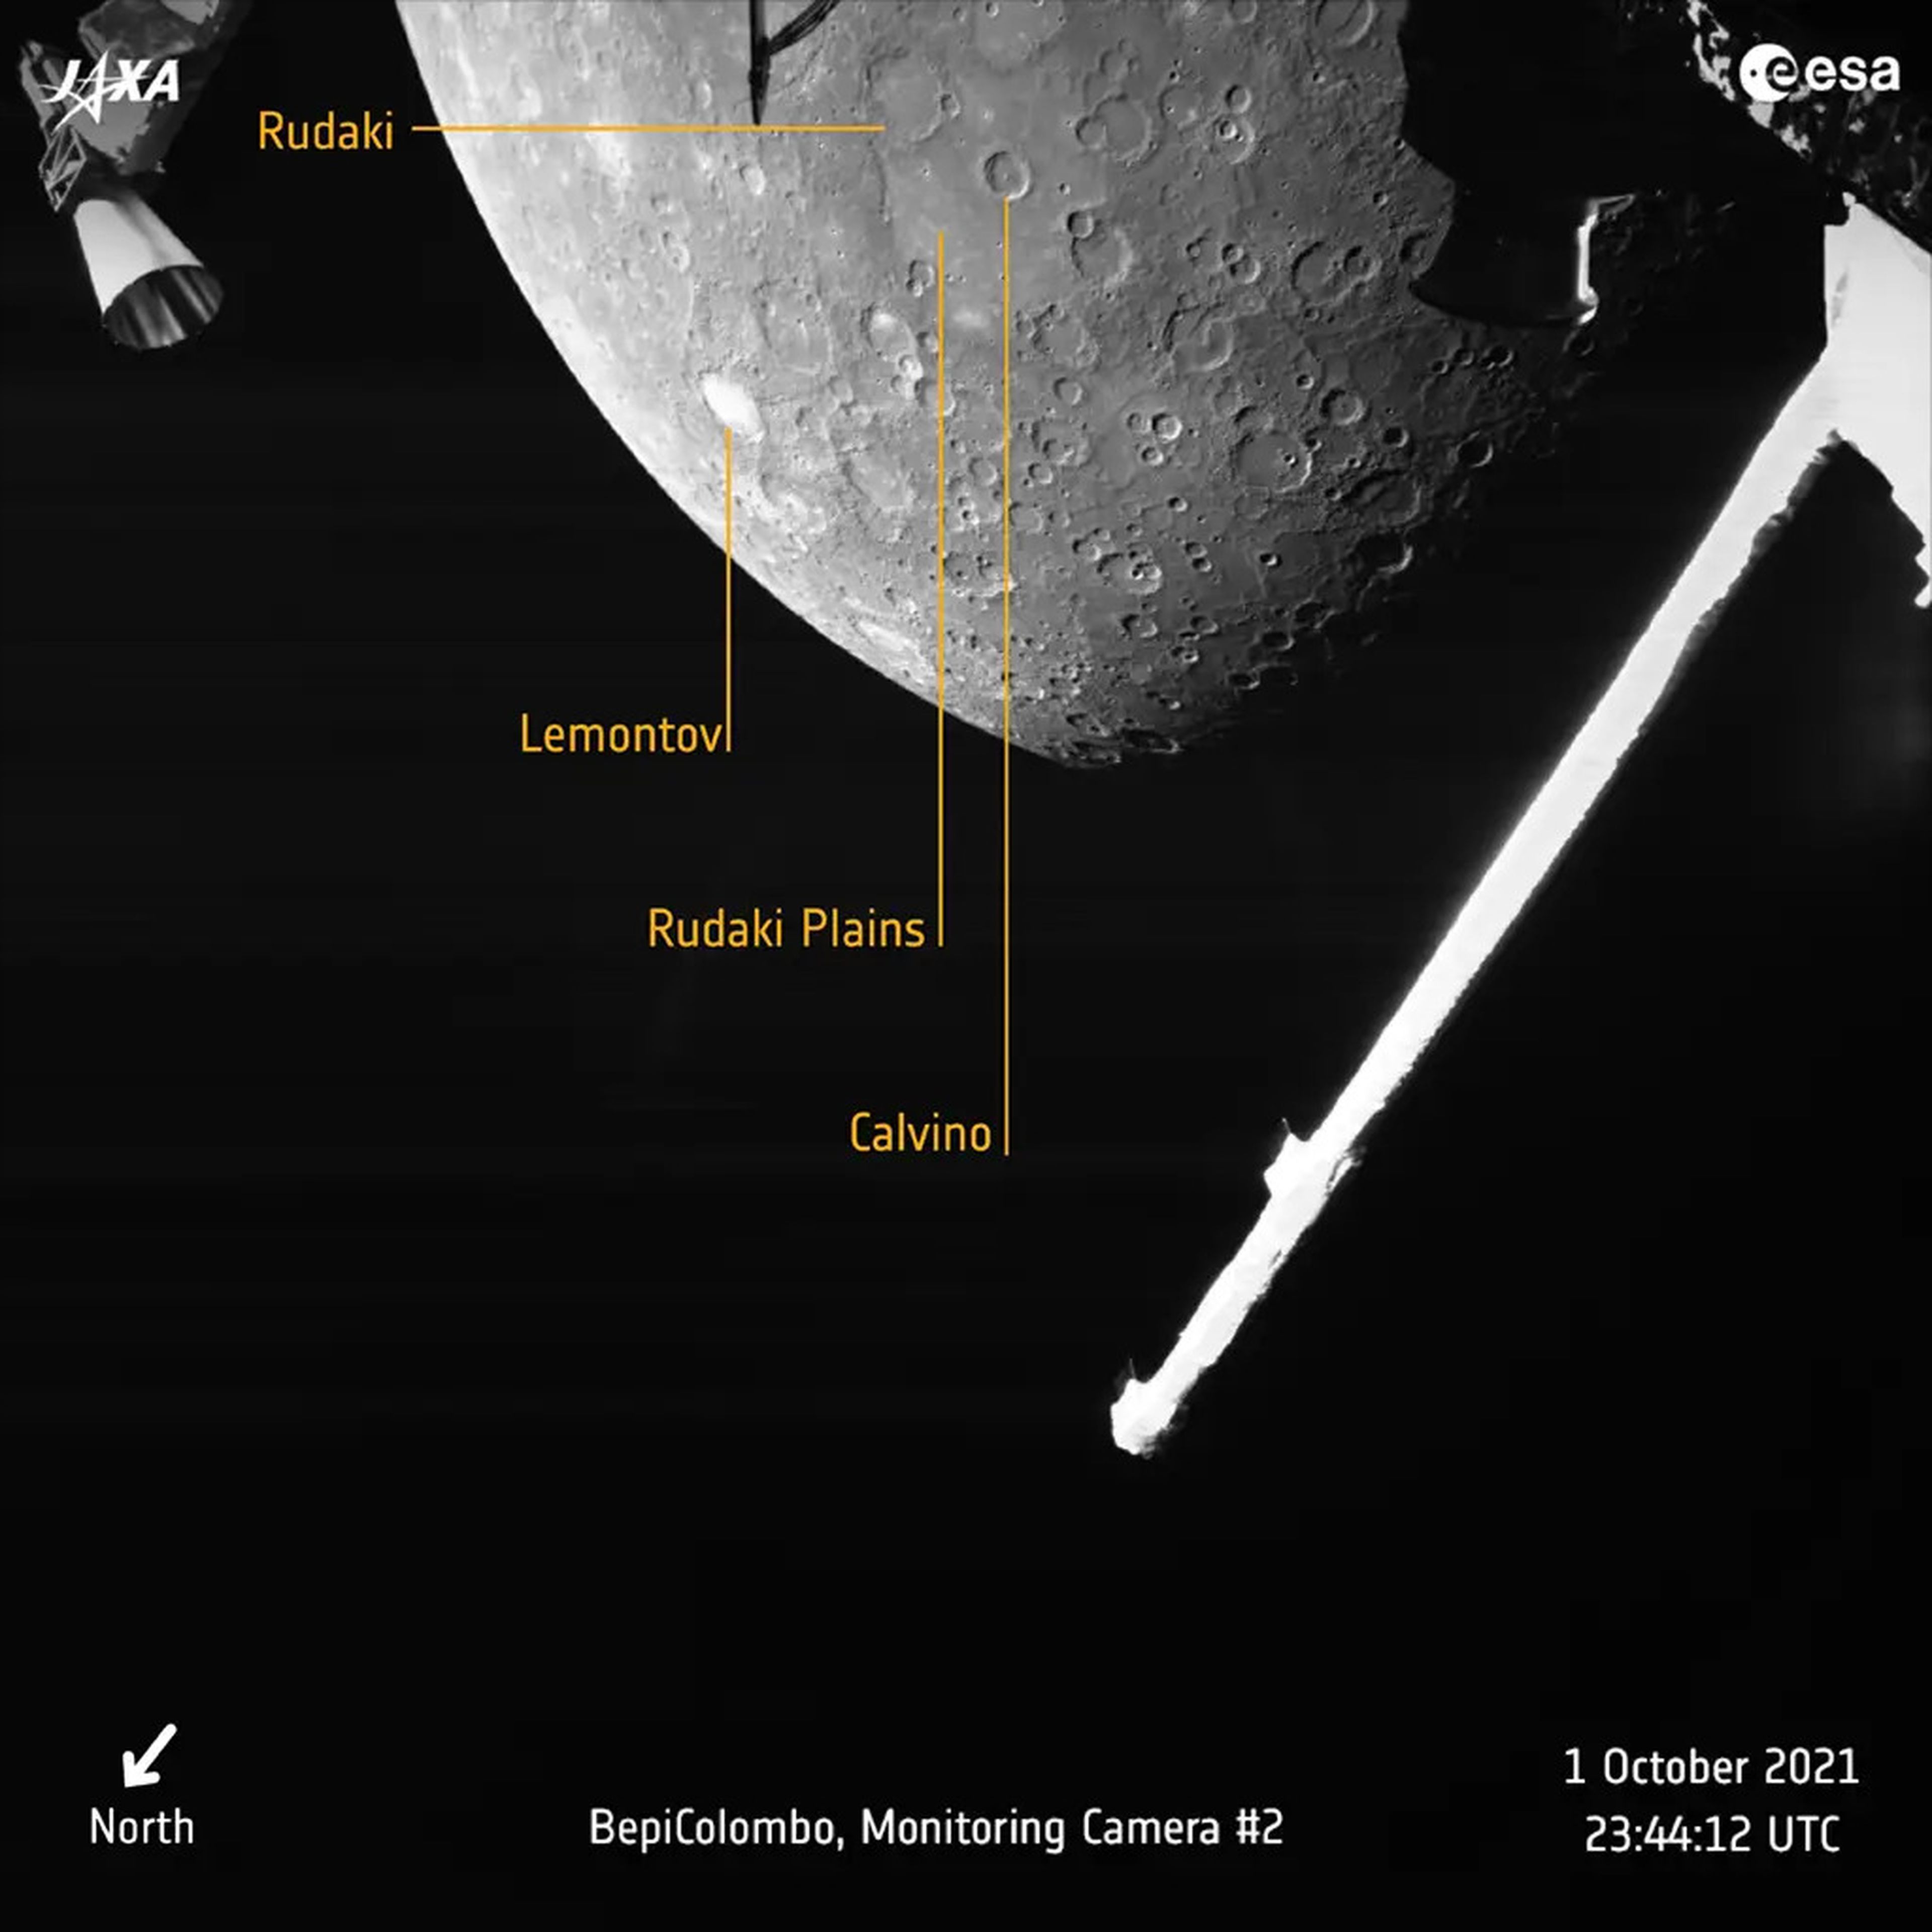 Una imagen muestra los cráteres y llanuras de Mercurio, como se ve desde el primer sobrevuelo de BepiColombo.